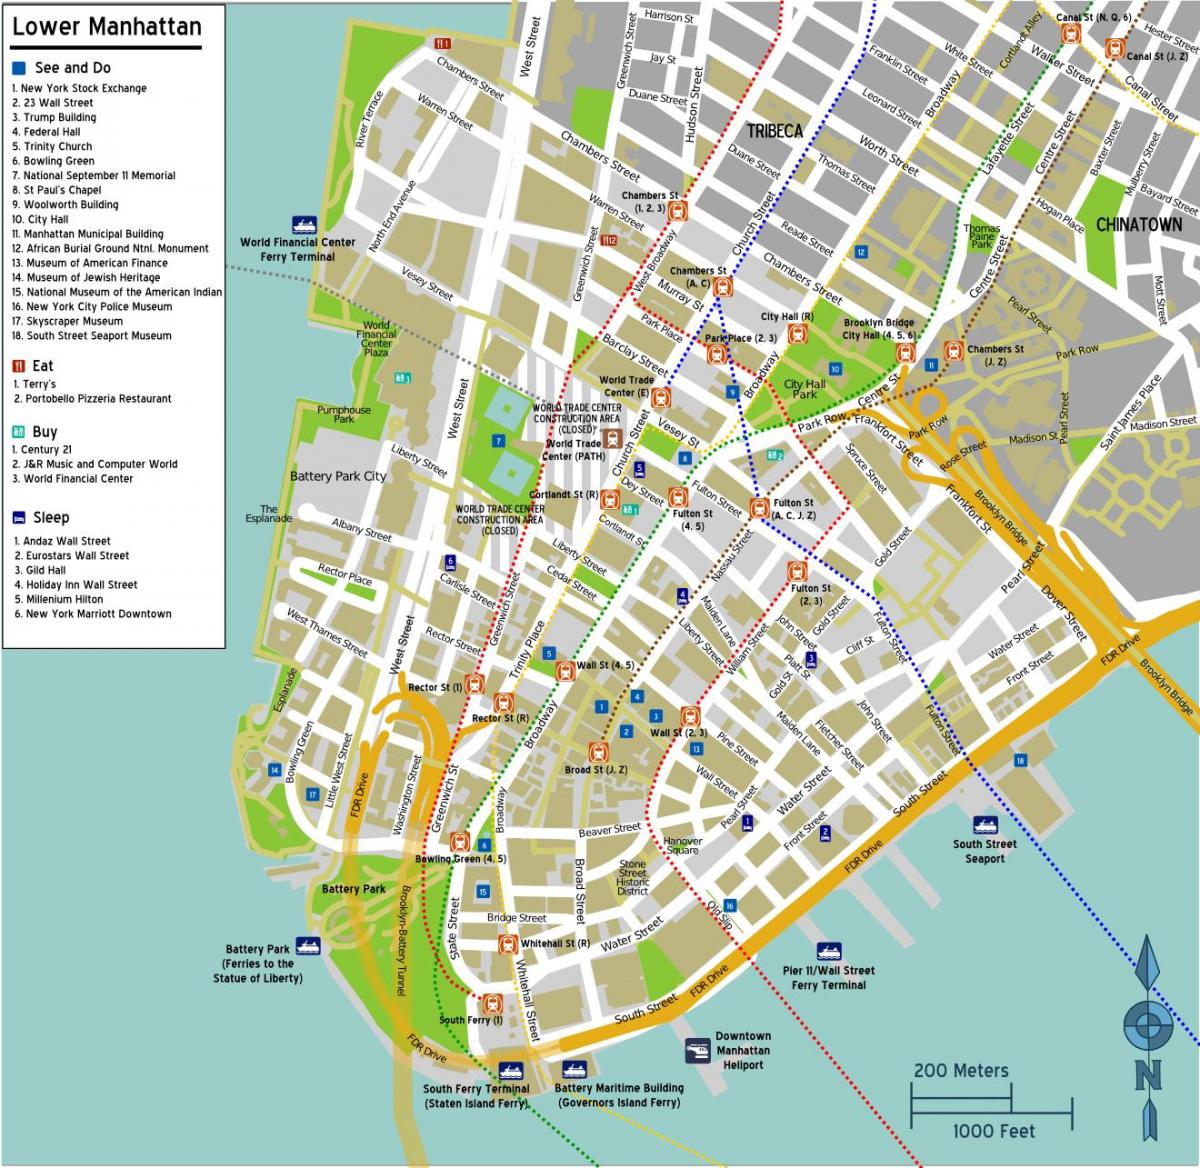 mapa de la part baixa de Manhattan amb noms de carrers